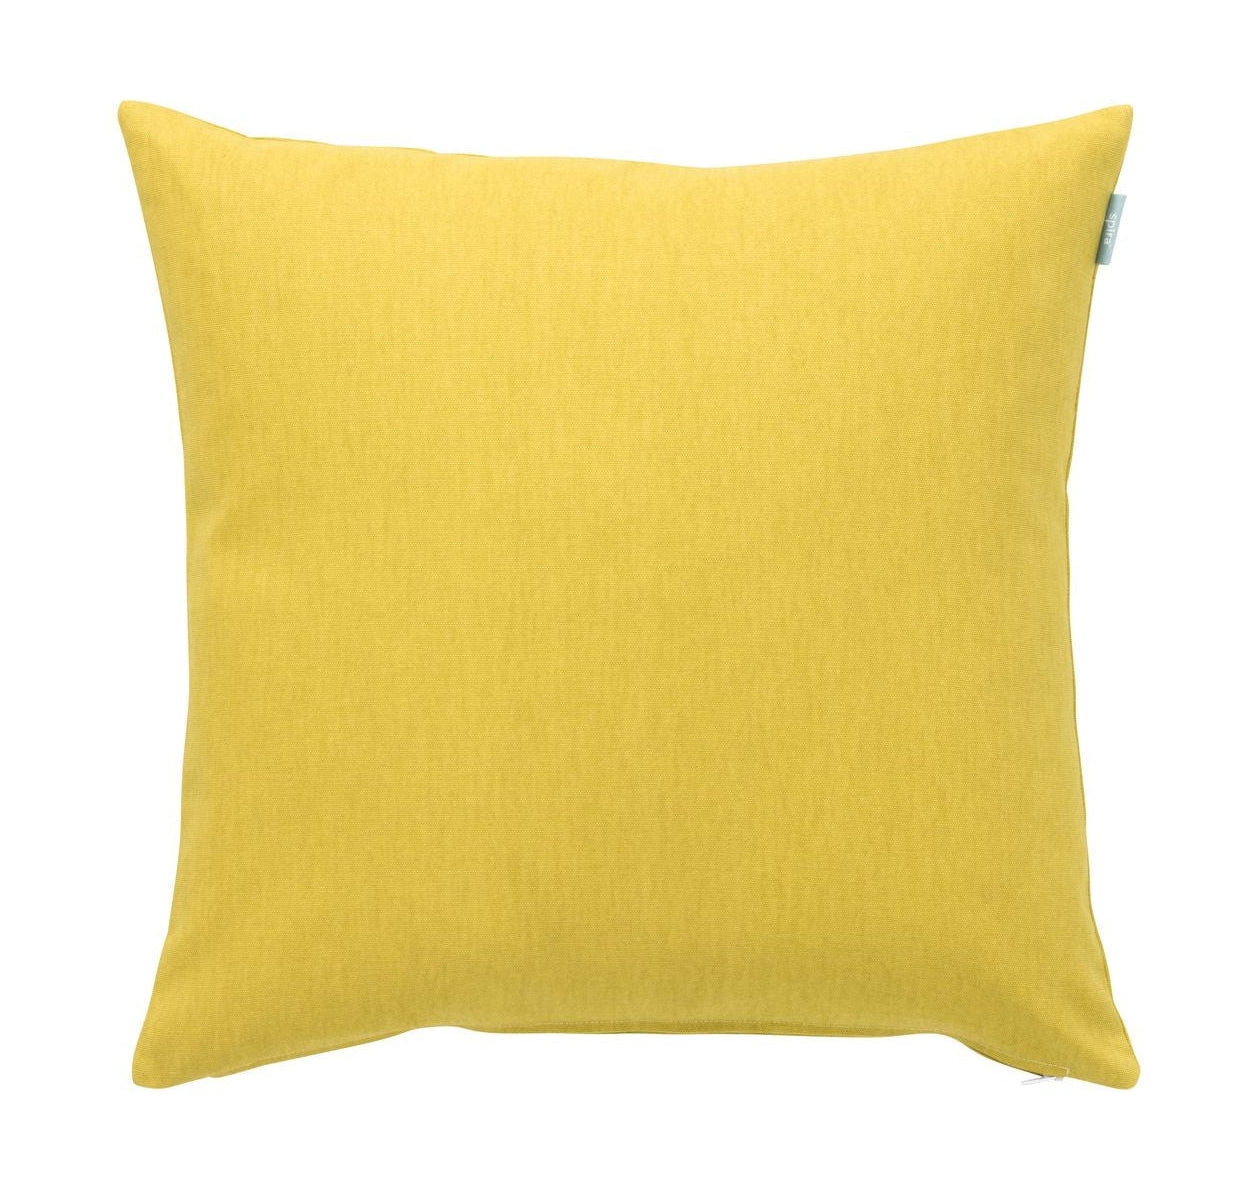 Spira Släte 50 I Klotz Cushion Cover, Yellow